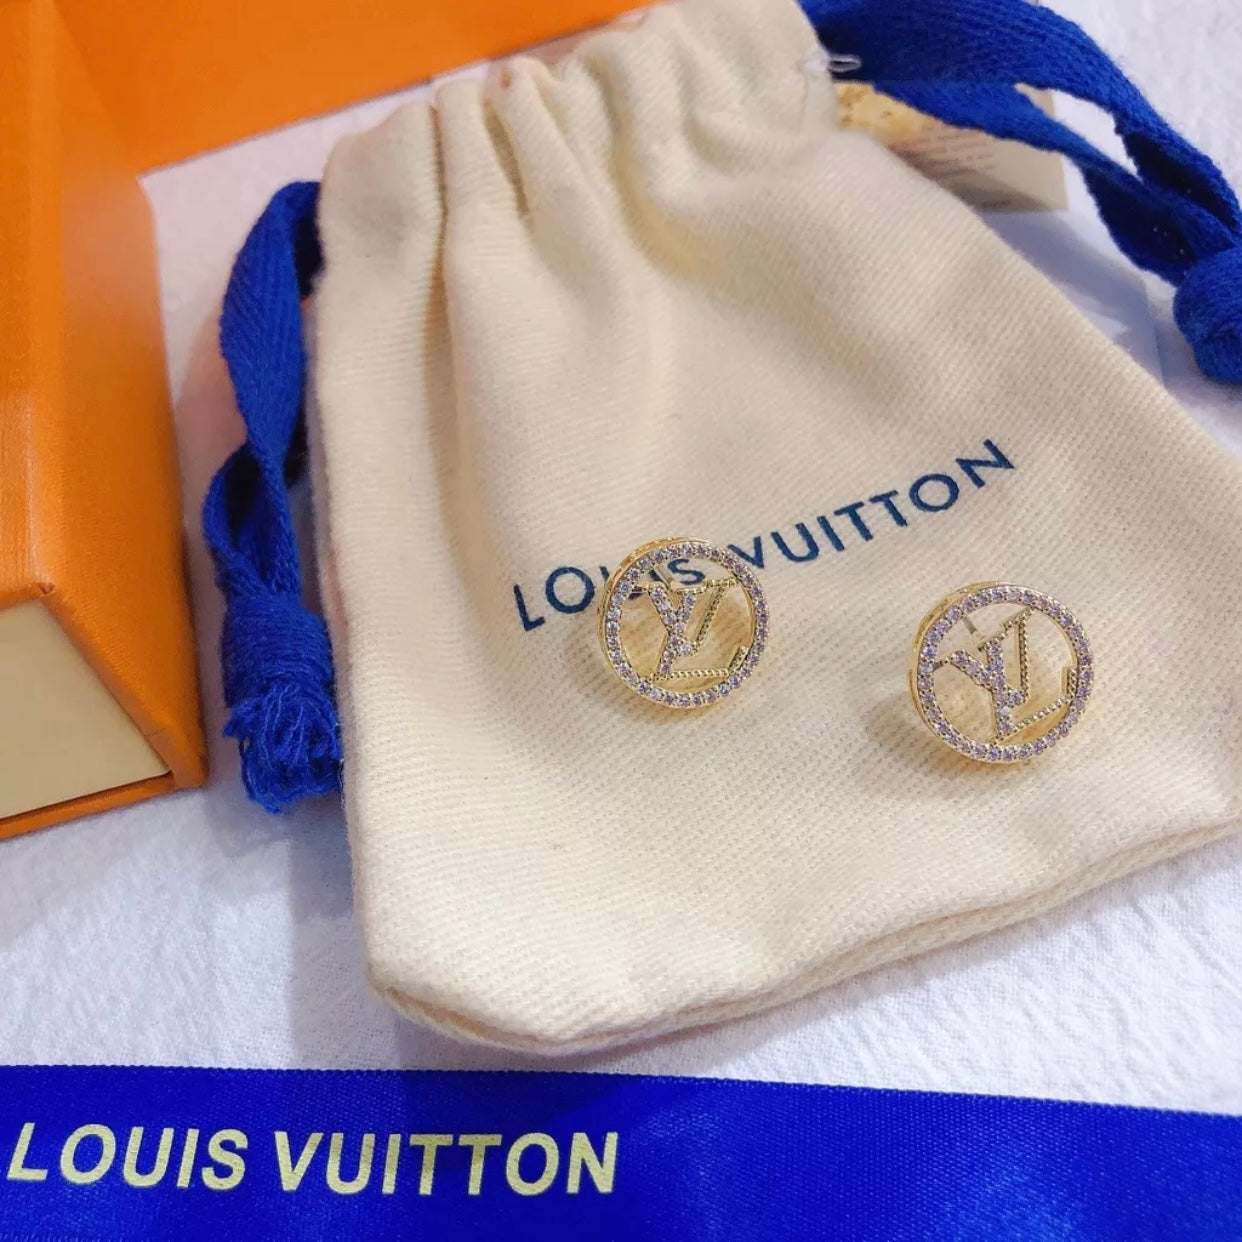 Brinco Louis Vuitton